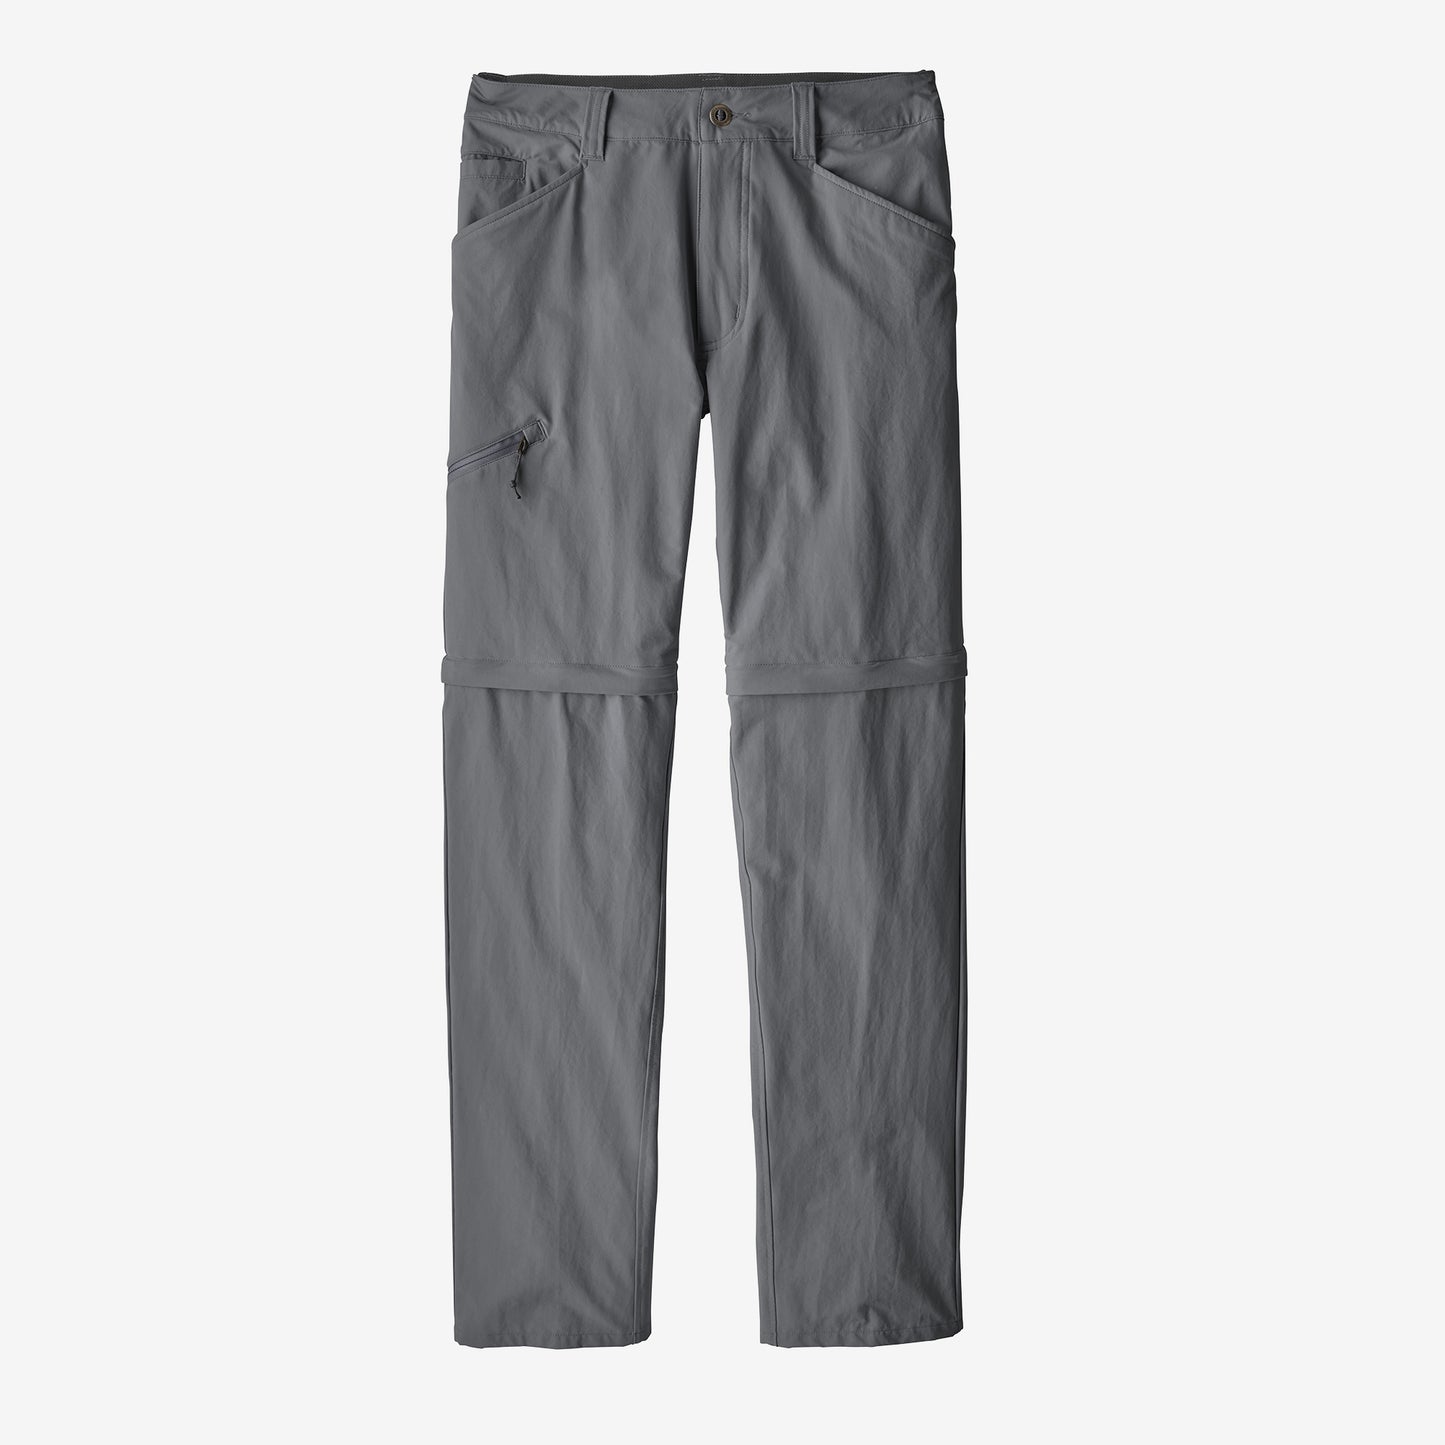 Patagonia Men's Quandary Convertible Pants - Short